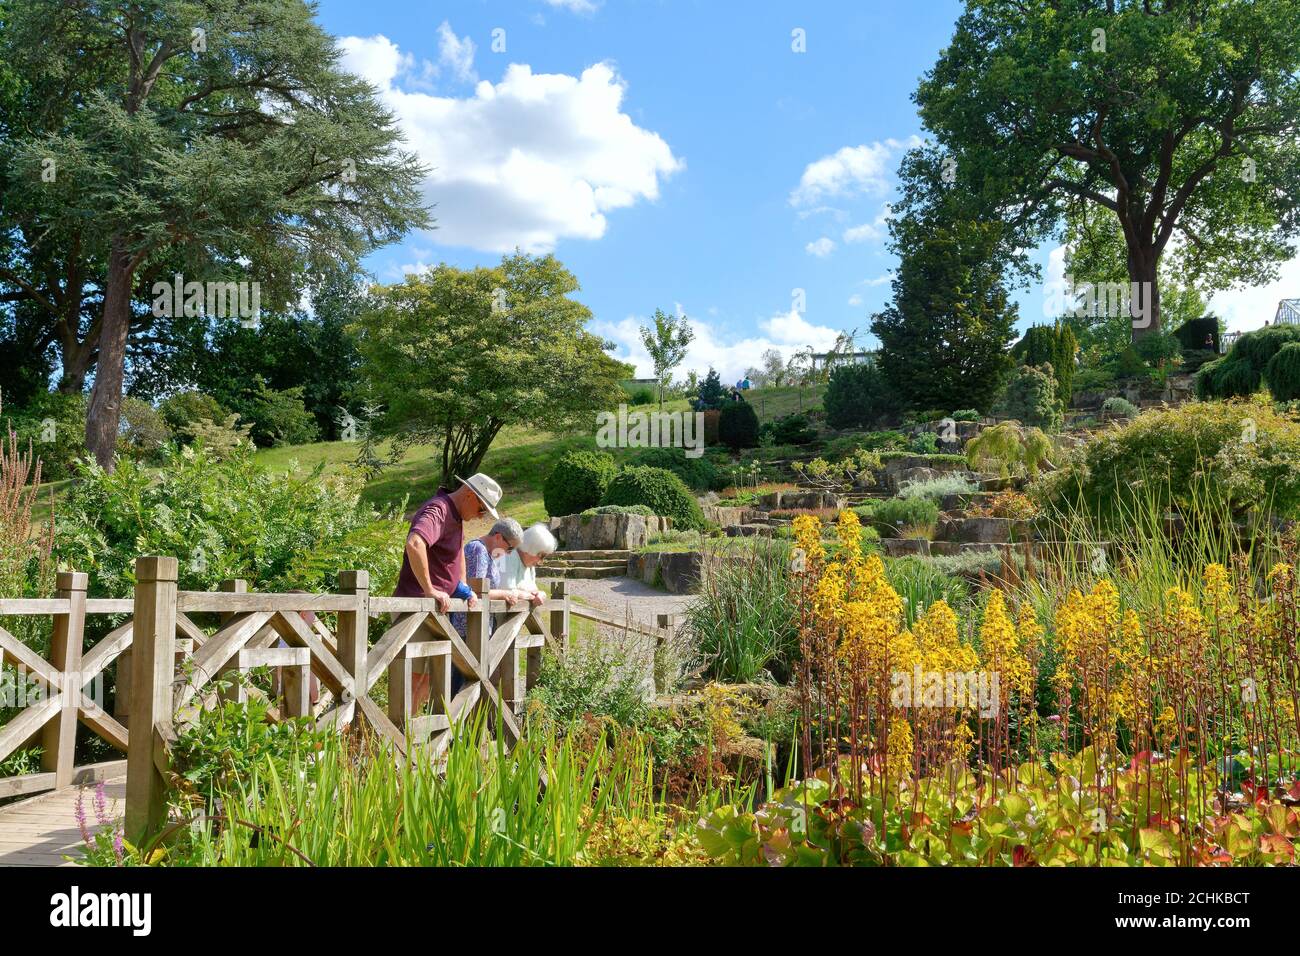 Los Jardines de la Royal Horticultural Society en Wisley en un día de verano, con los visitantes admirando los exuberantes jardines, Surrey Inglaterra Reino Unido Foto de stock